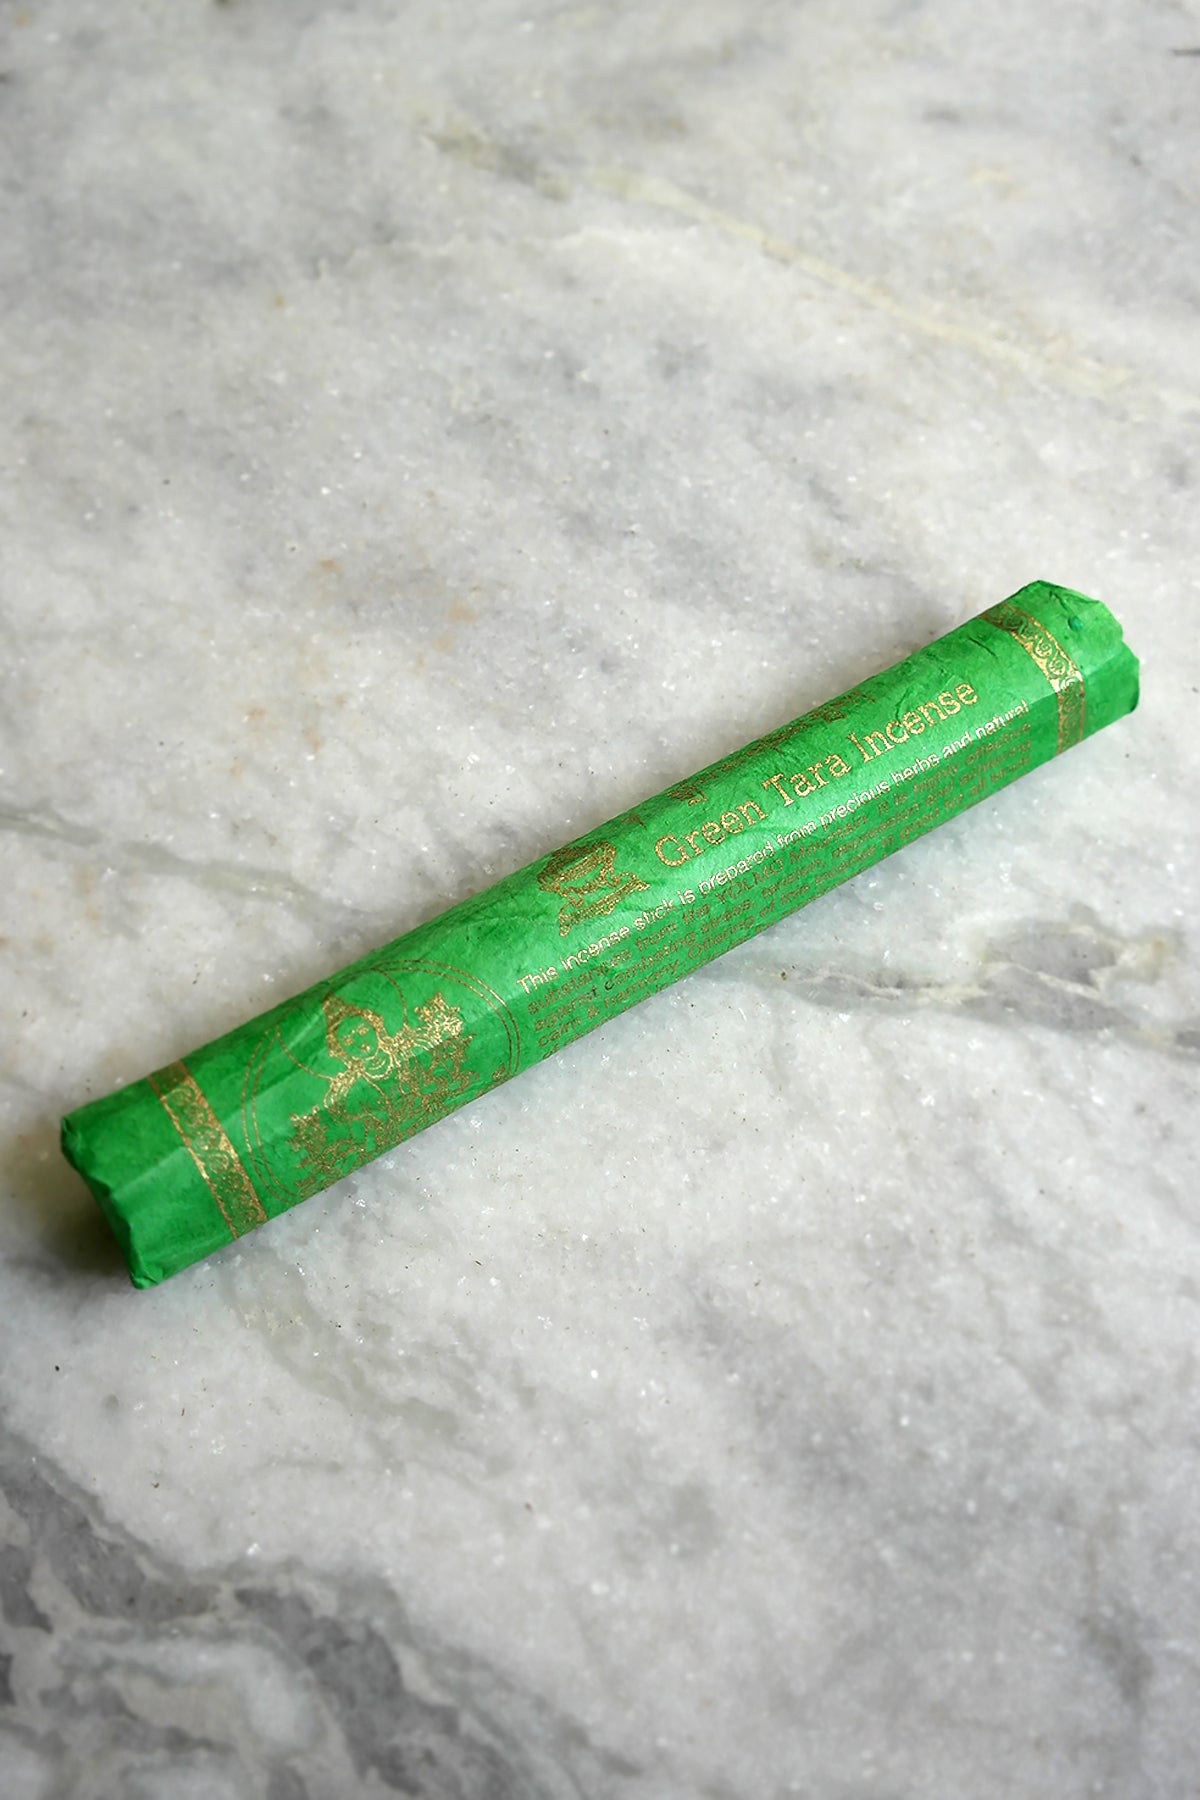 High Quality Himalayan Green Tara Incense Sticks, set of 3 - Vajracrafts